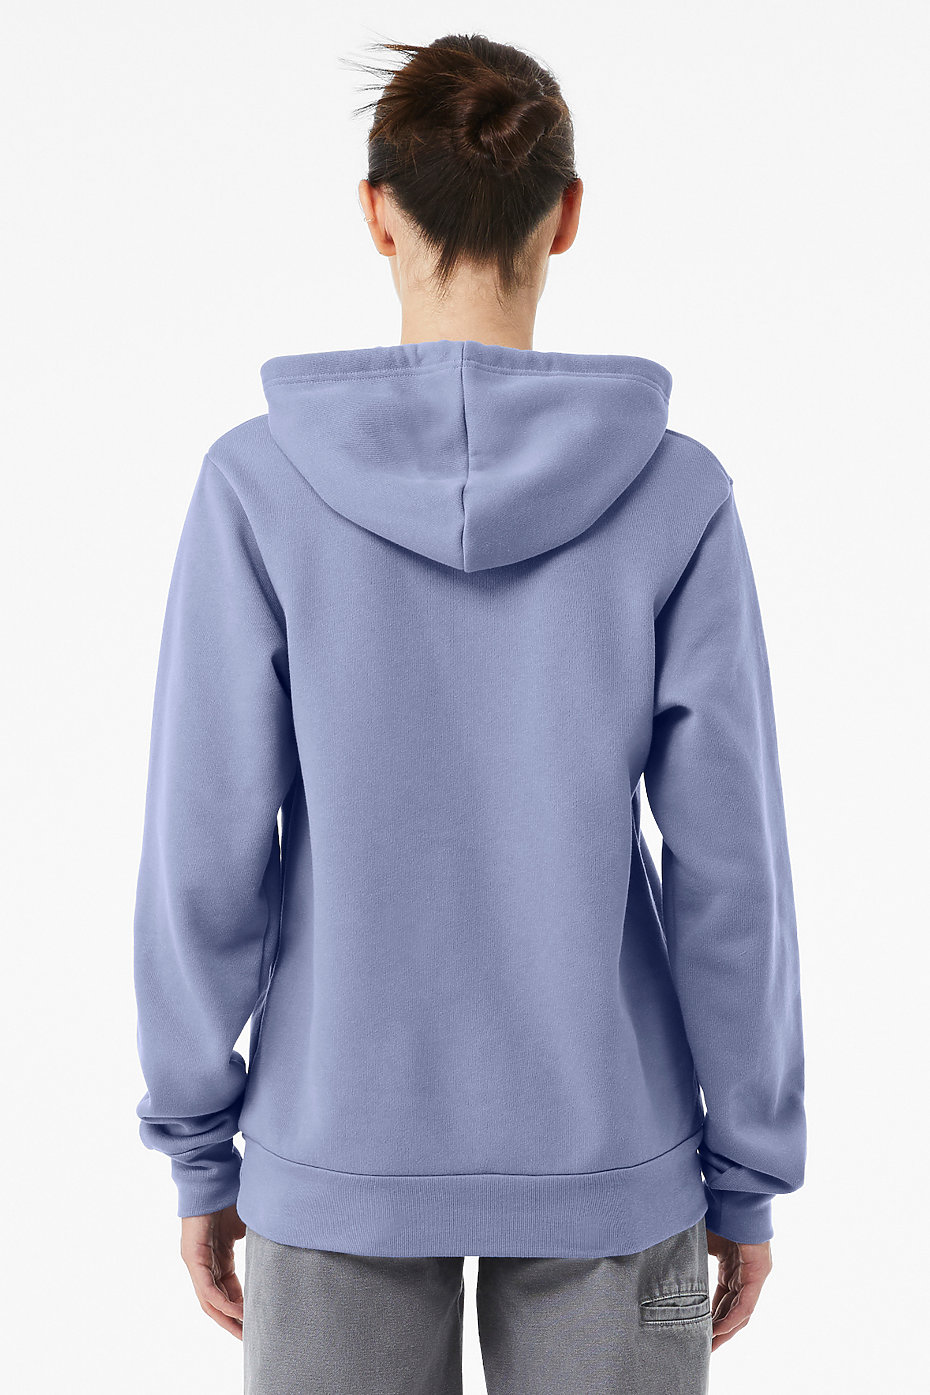 Hoodies For Men, Custom Sweatshirts, Pullover Hoodies, Mens Wholesale  Clothing